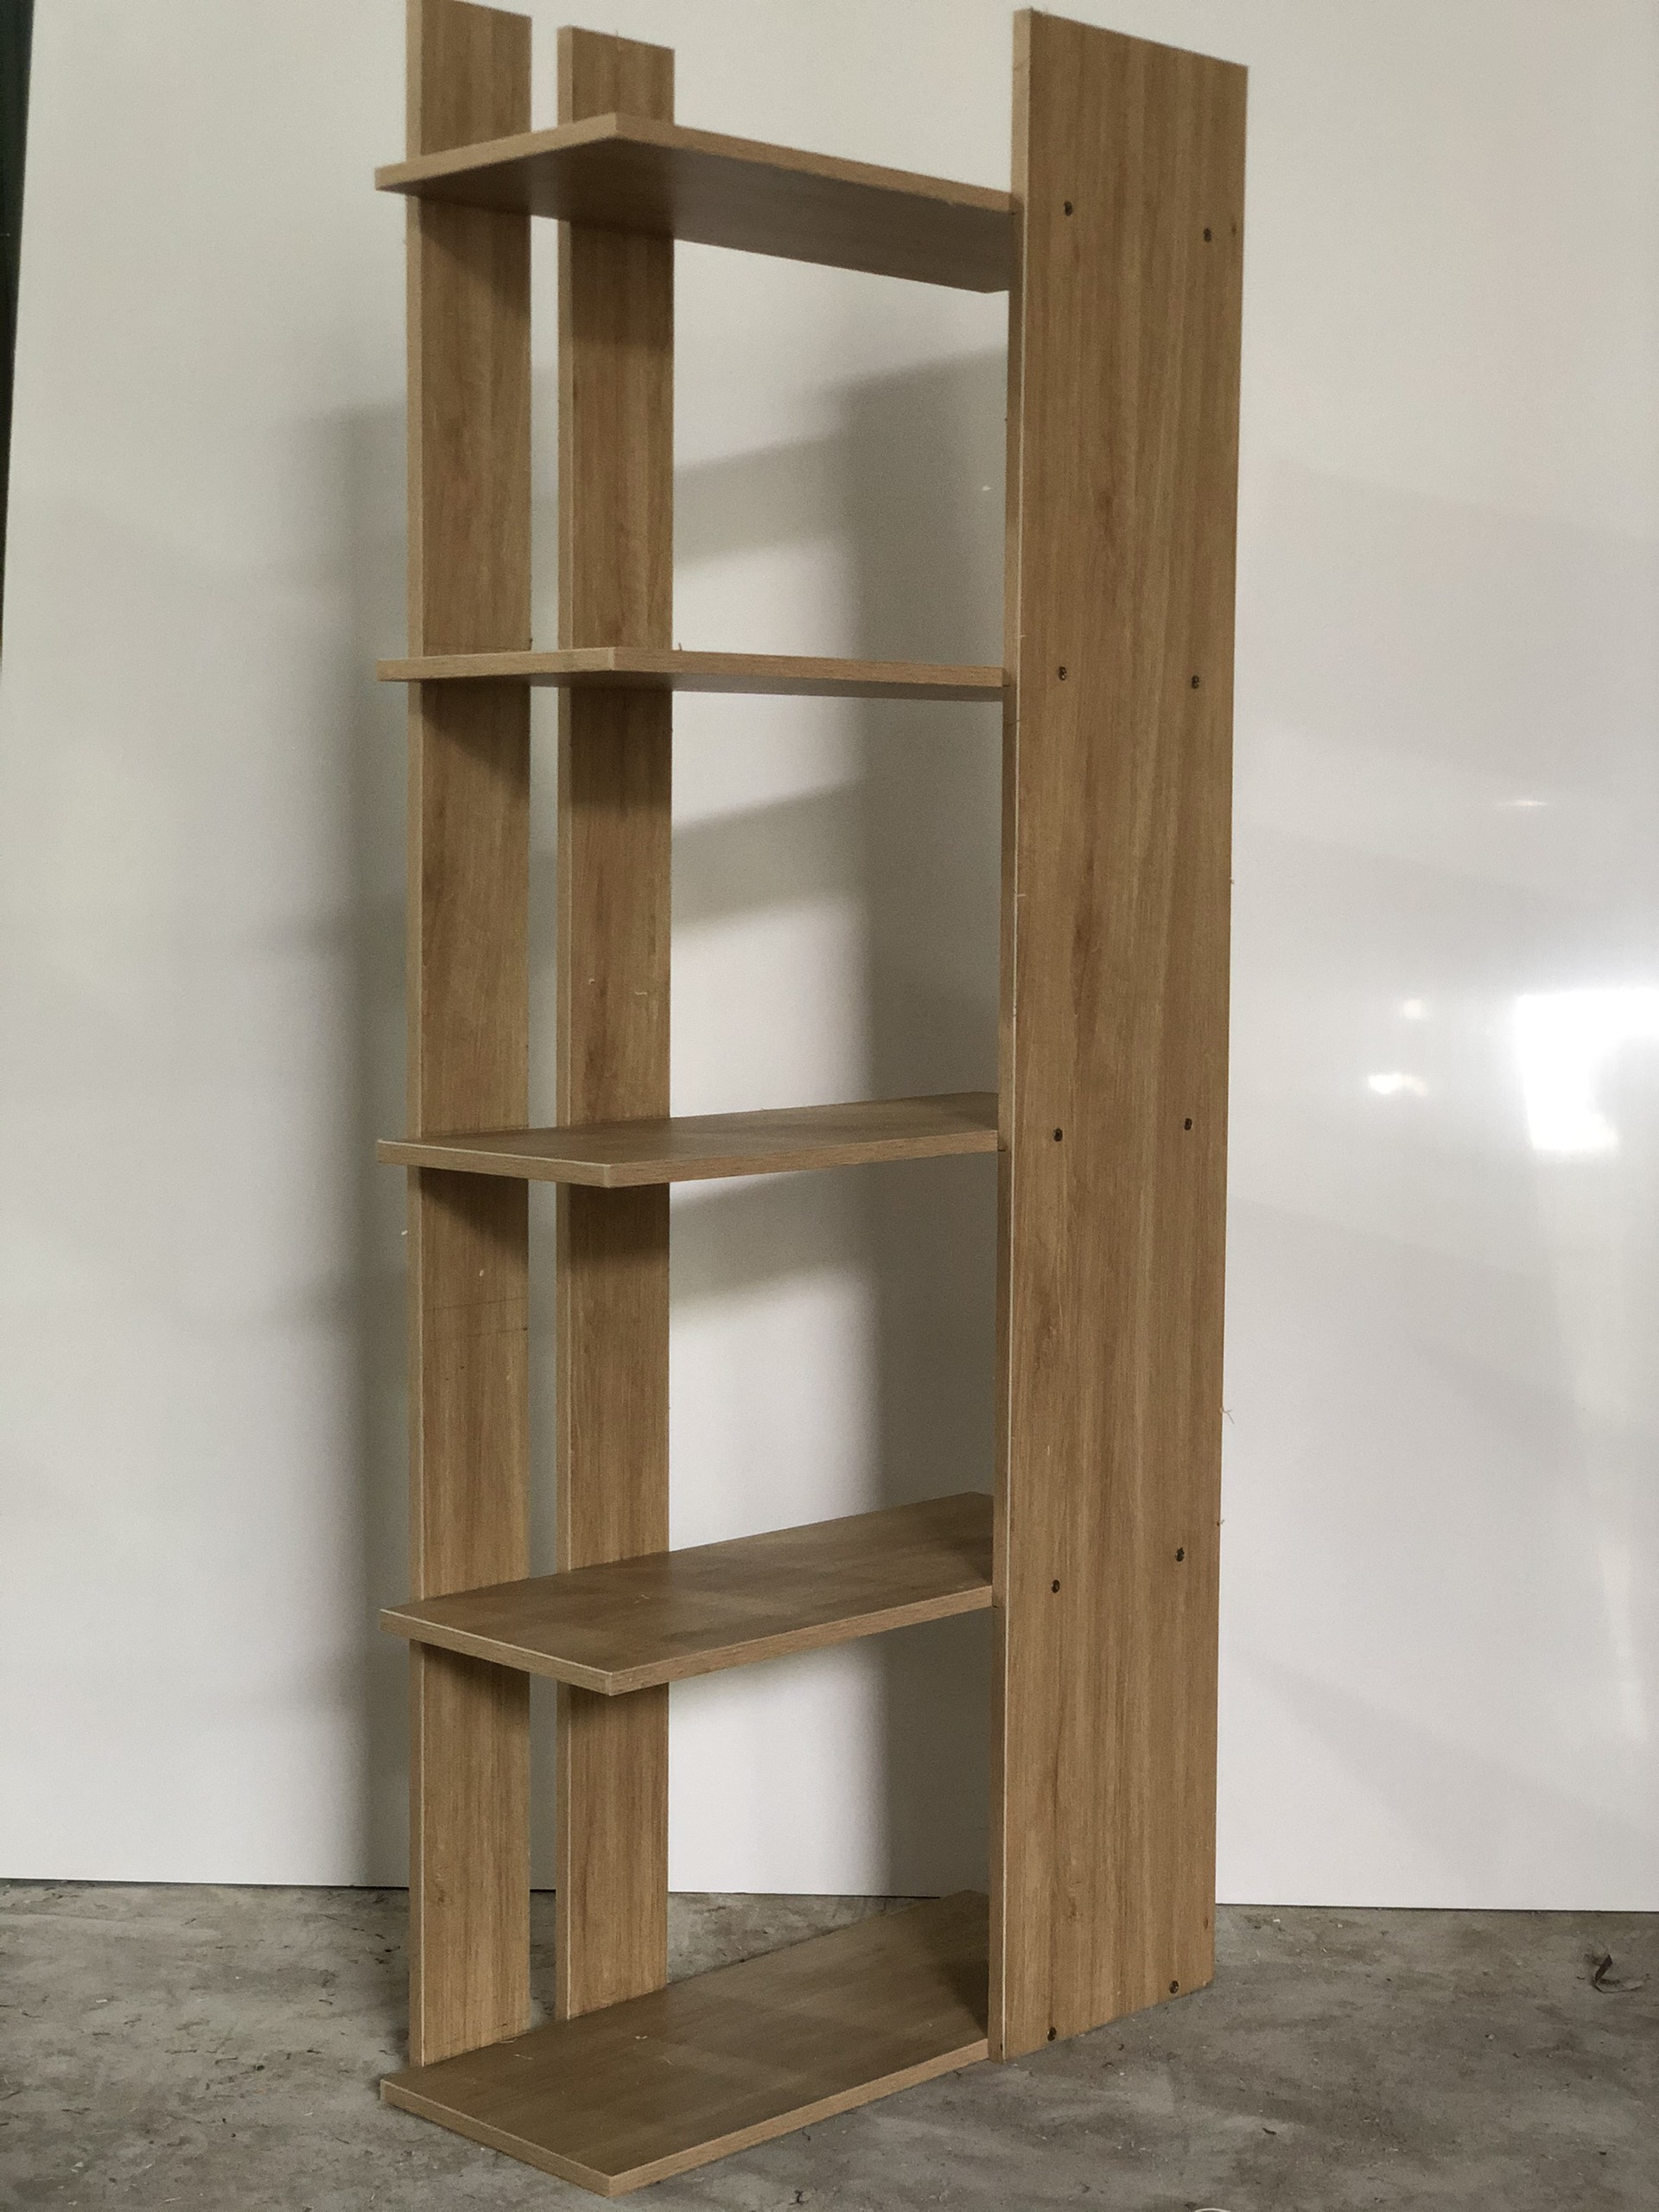 Kệ sách 5 tầng phong cách tối giản bằng gỗ công nghiệp